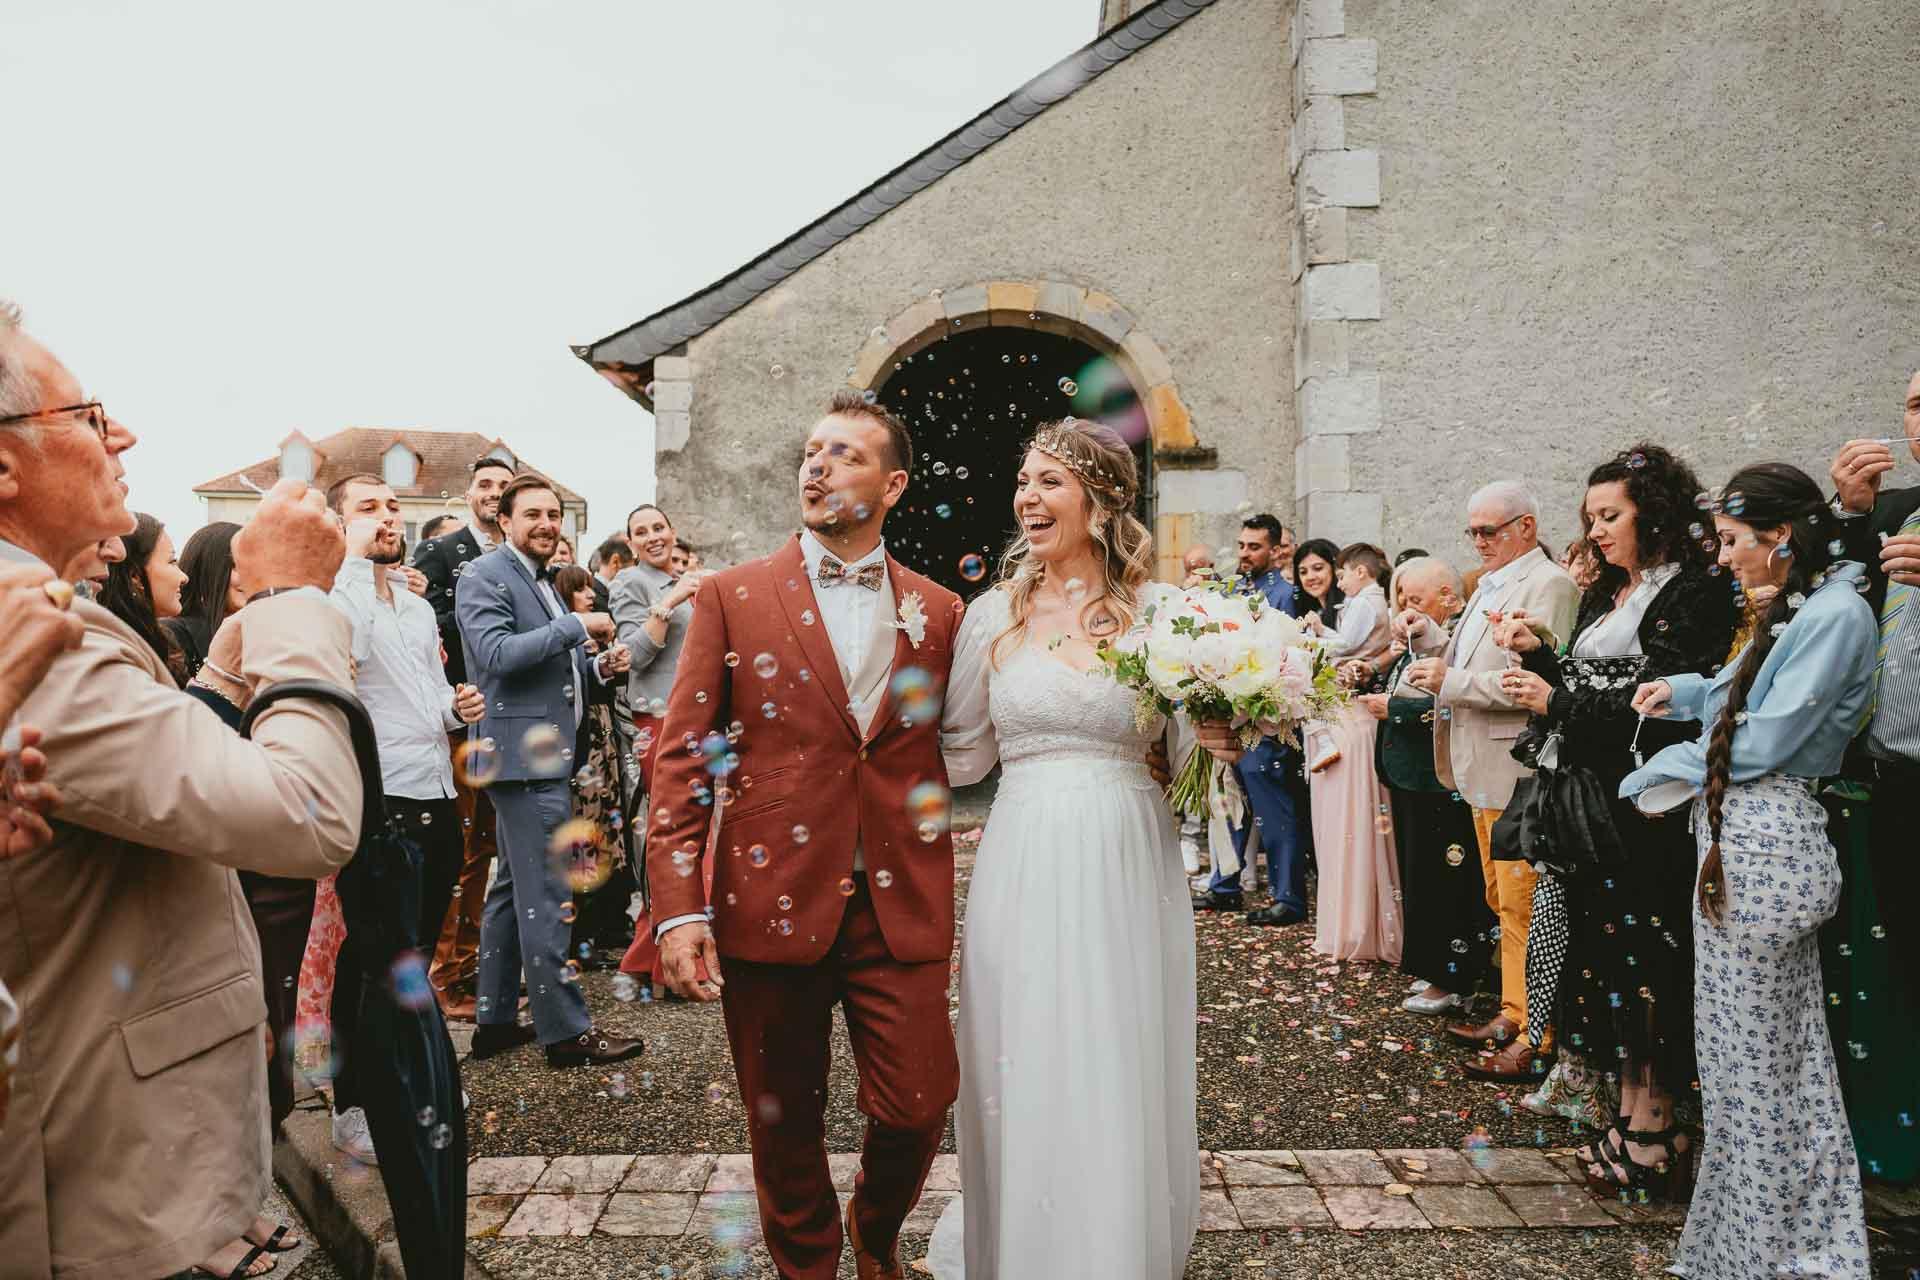 Des mariés sortent d'une église avec des confettis lancés sur eux après leur cérémonie de mariage hippie.